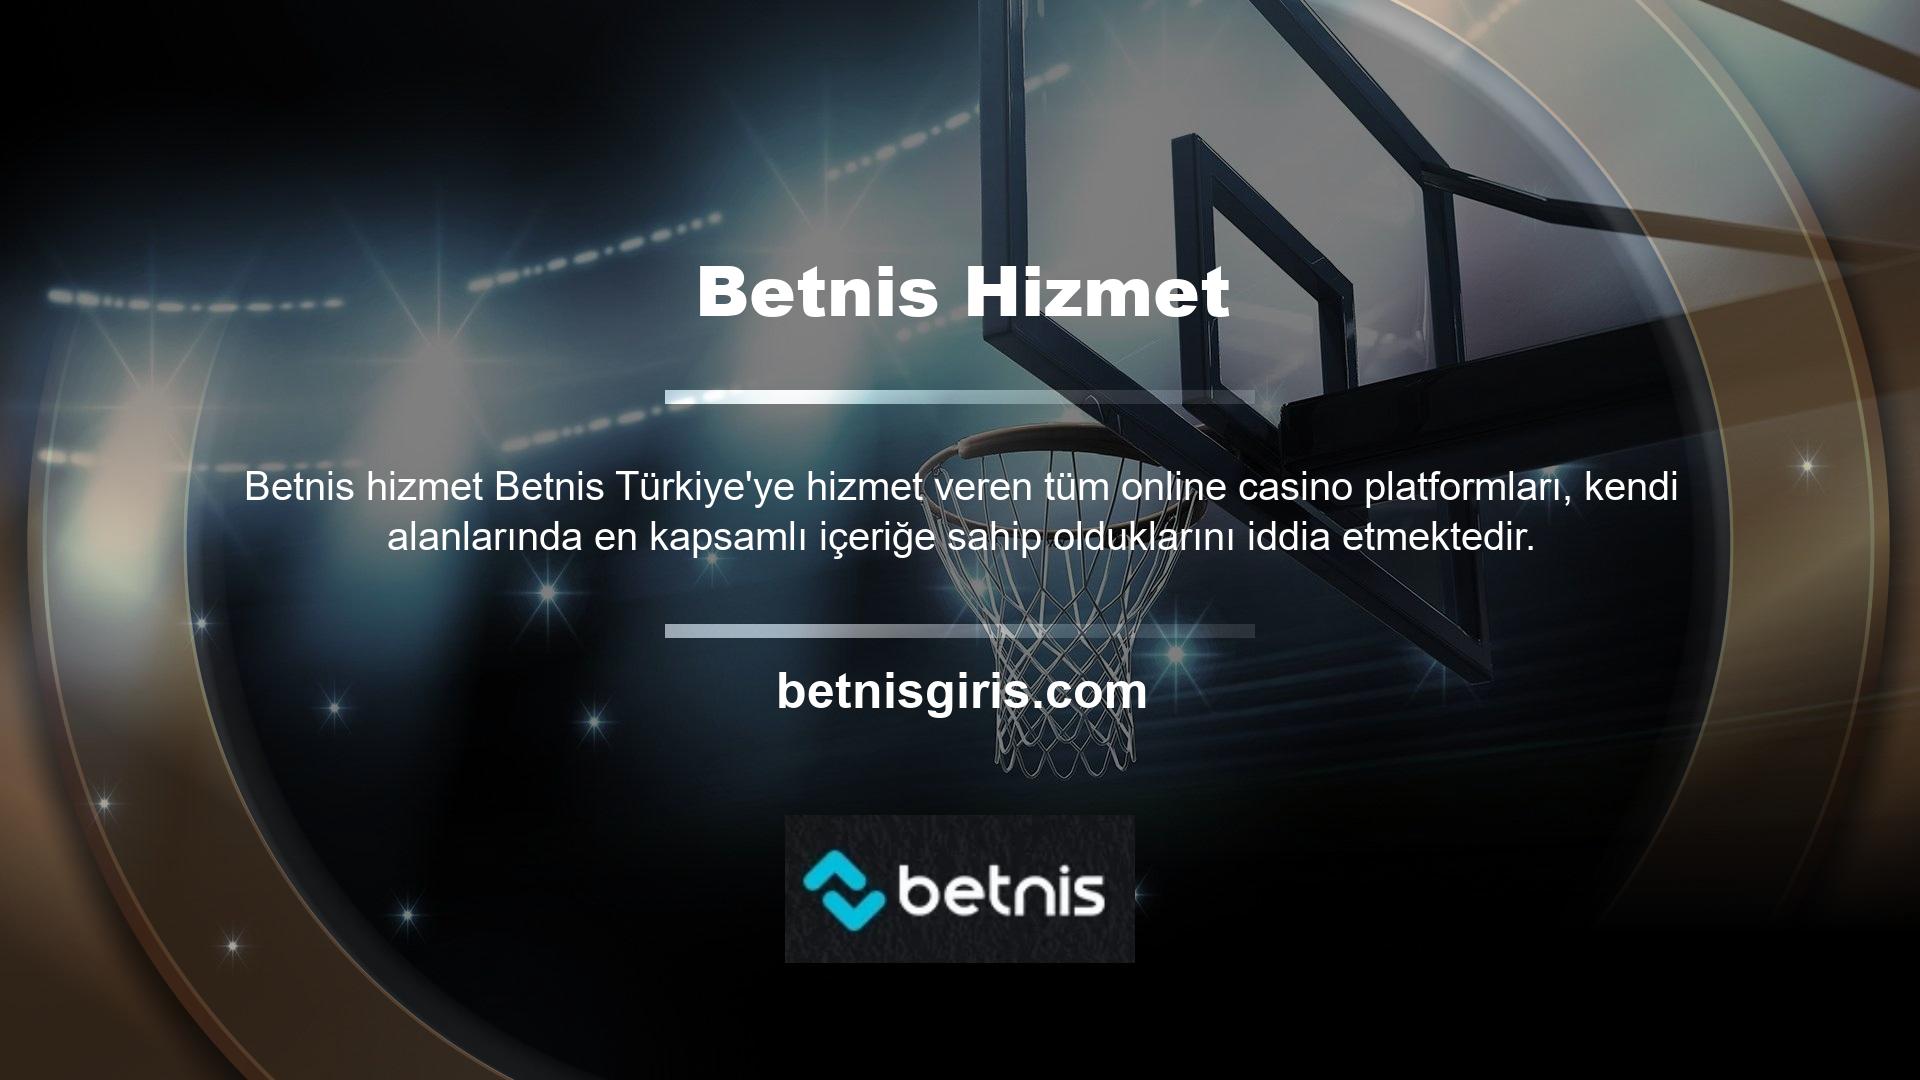 Genel olarak, Betnis benzer oyun içeriği aynı anda tüm çevrimiçi casino platformlarında bulunabilir